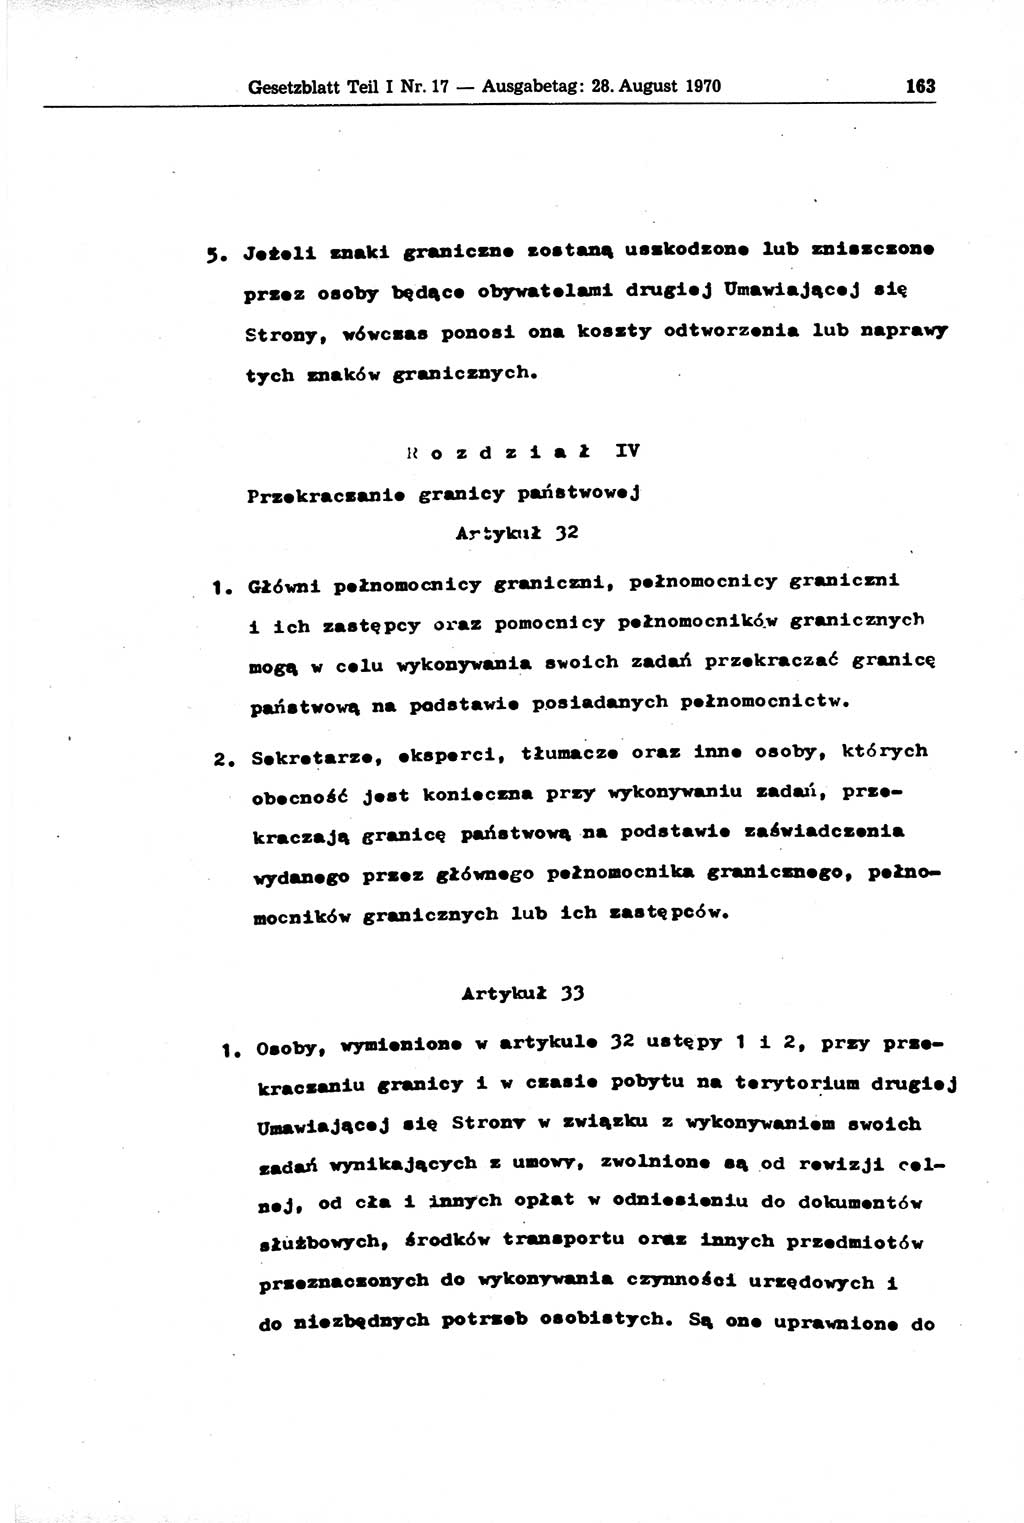 Gesetzblatt (GBl.) der Deutschen Demokratischen Republik (DDR) Teil Ⅰ 1970, Seite 163 (GBl. DDR Ⅰ 1970, S. 163)